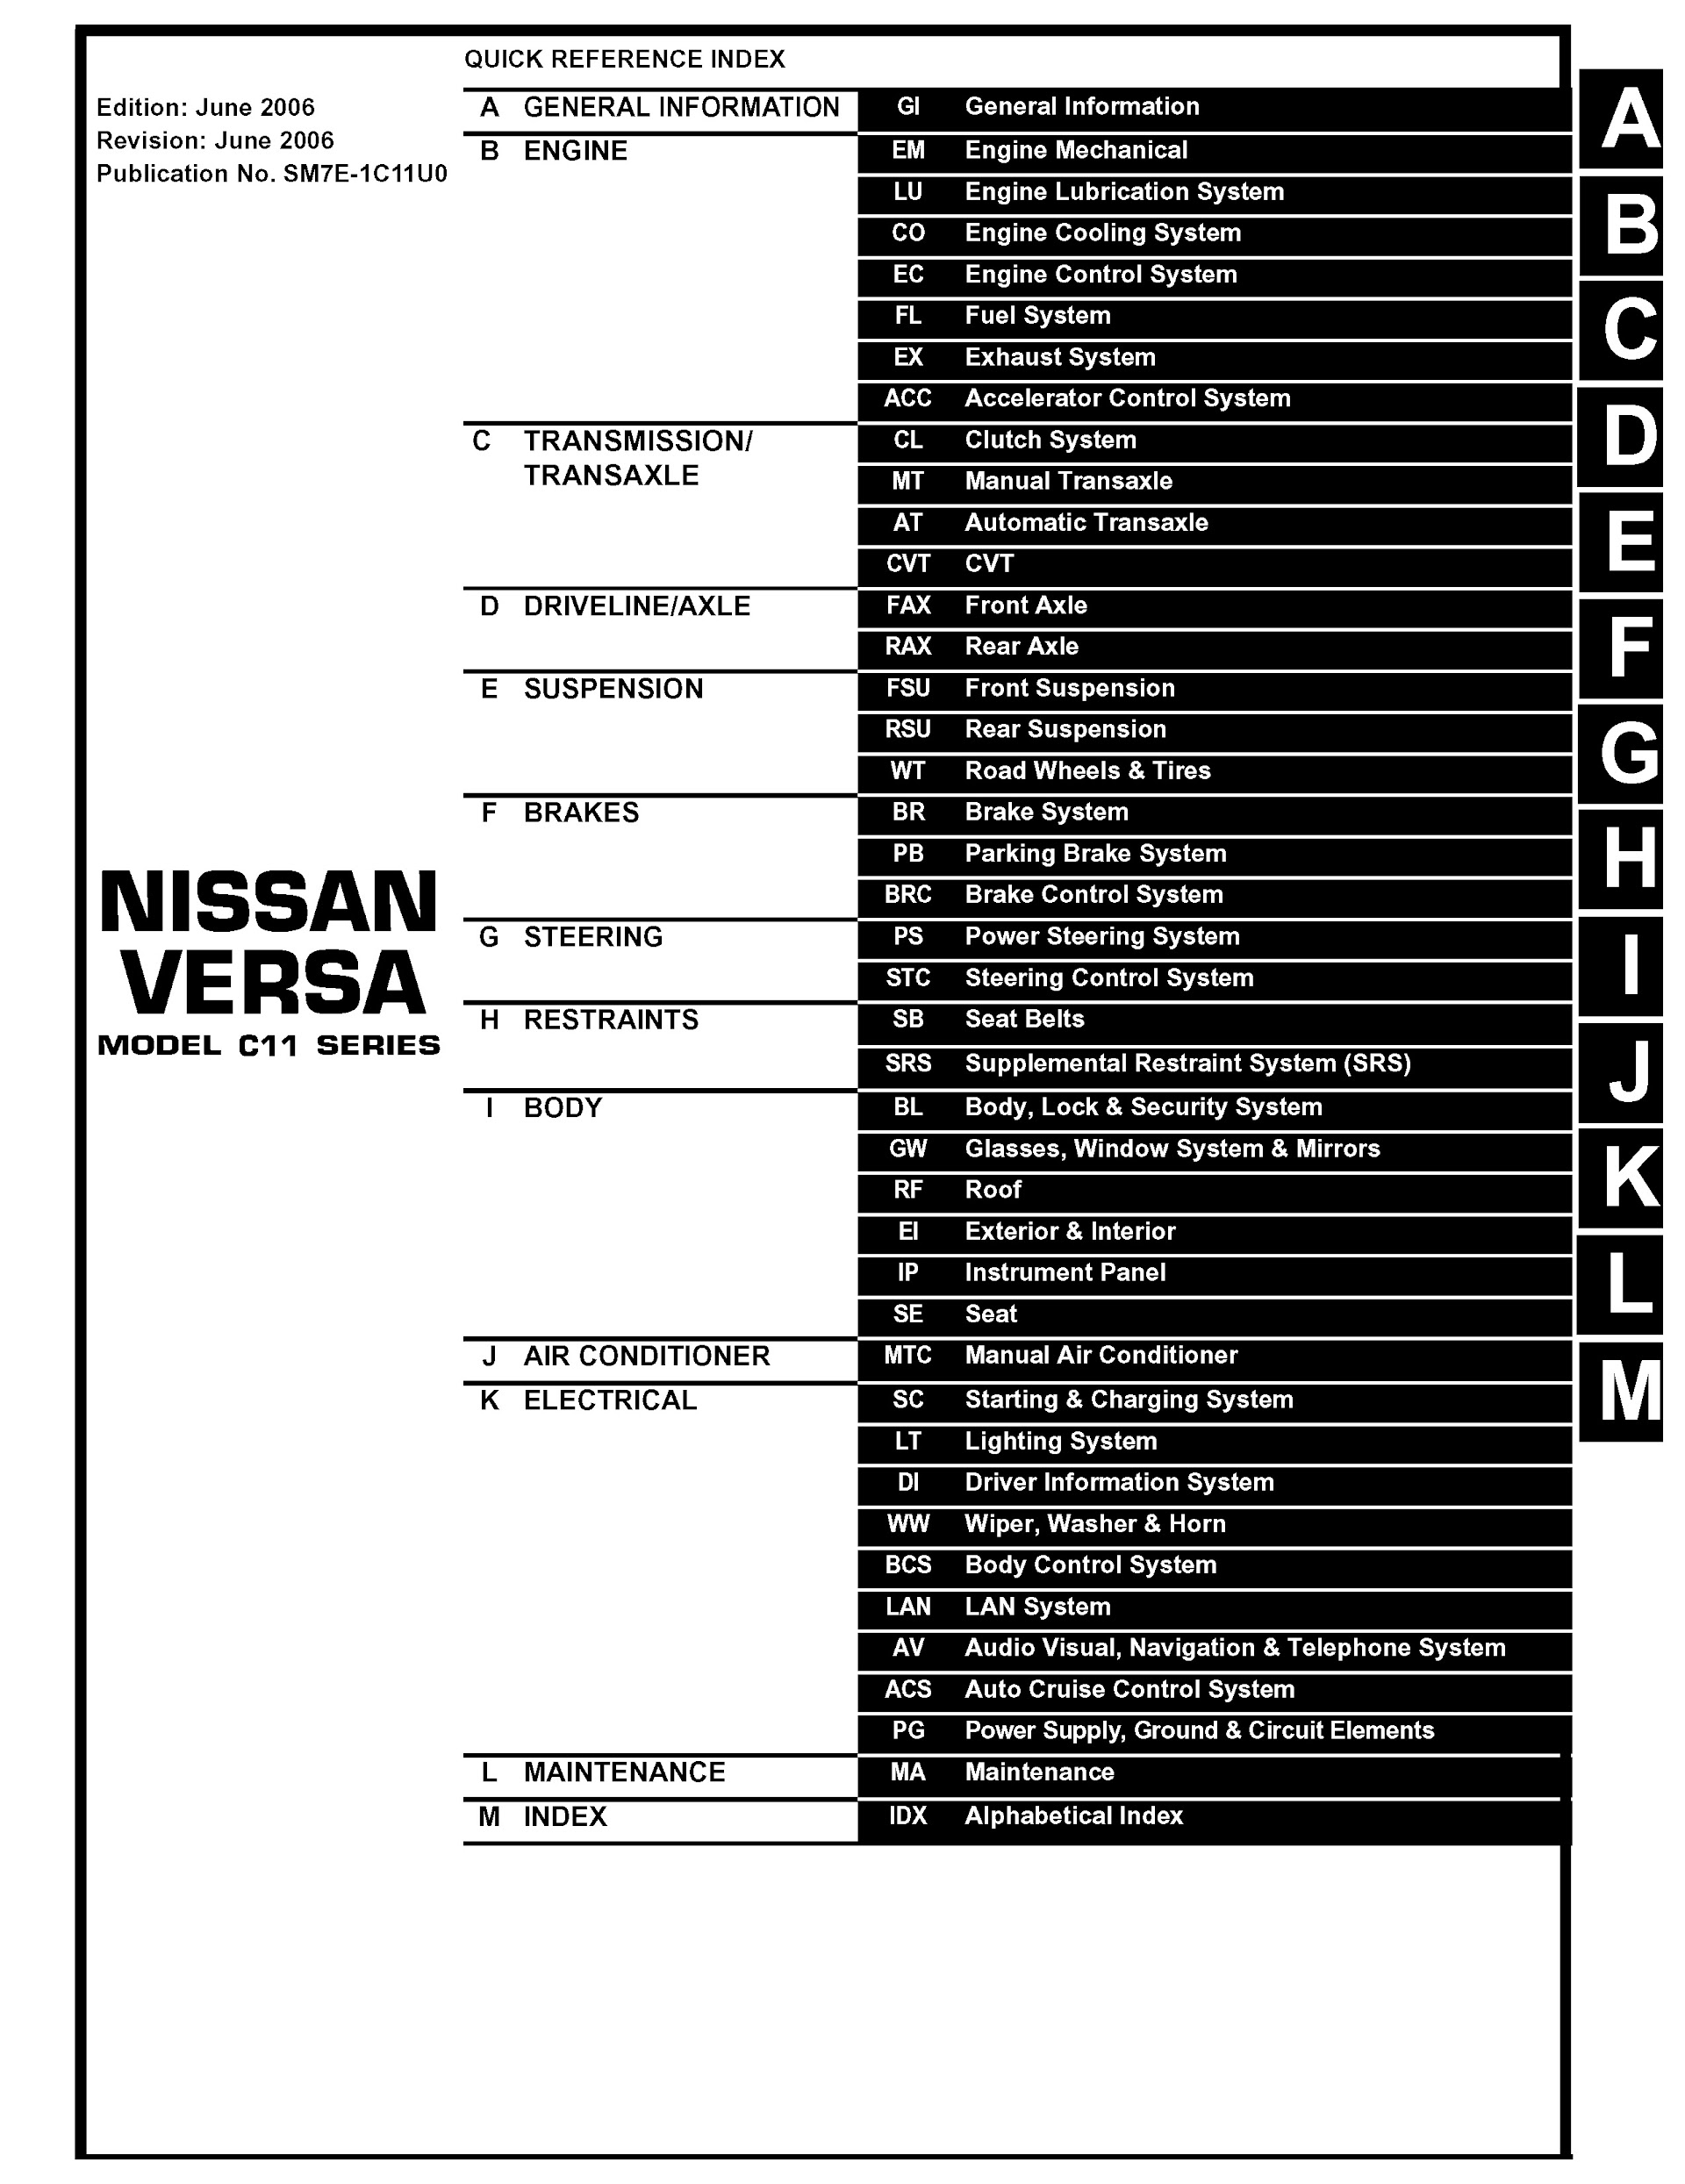 Download 2007 Nissan Versa Repair Manual.